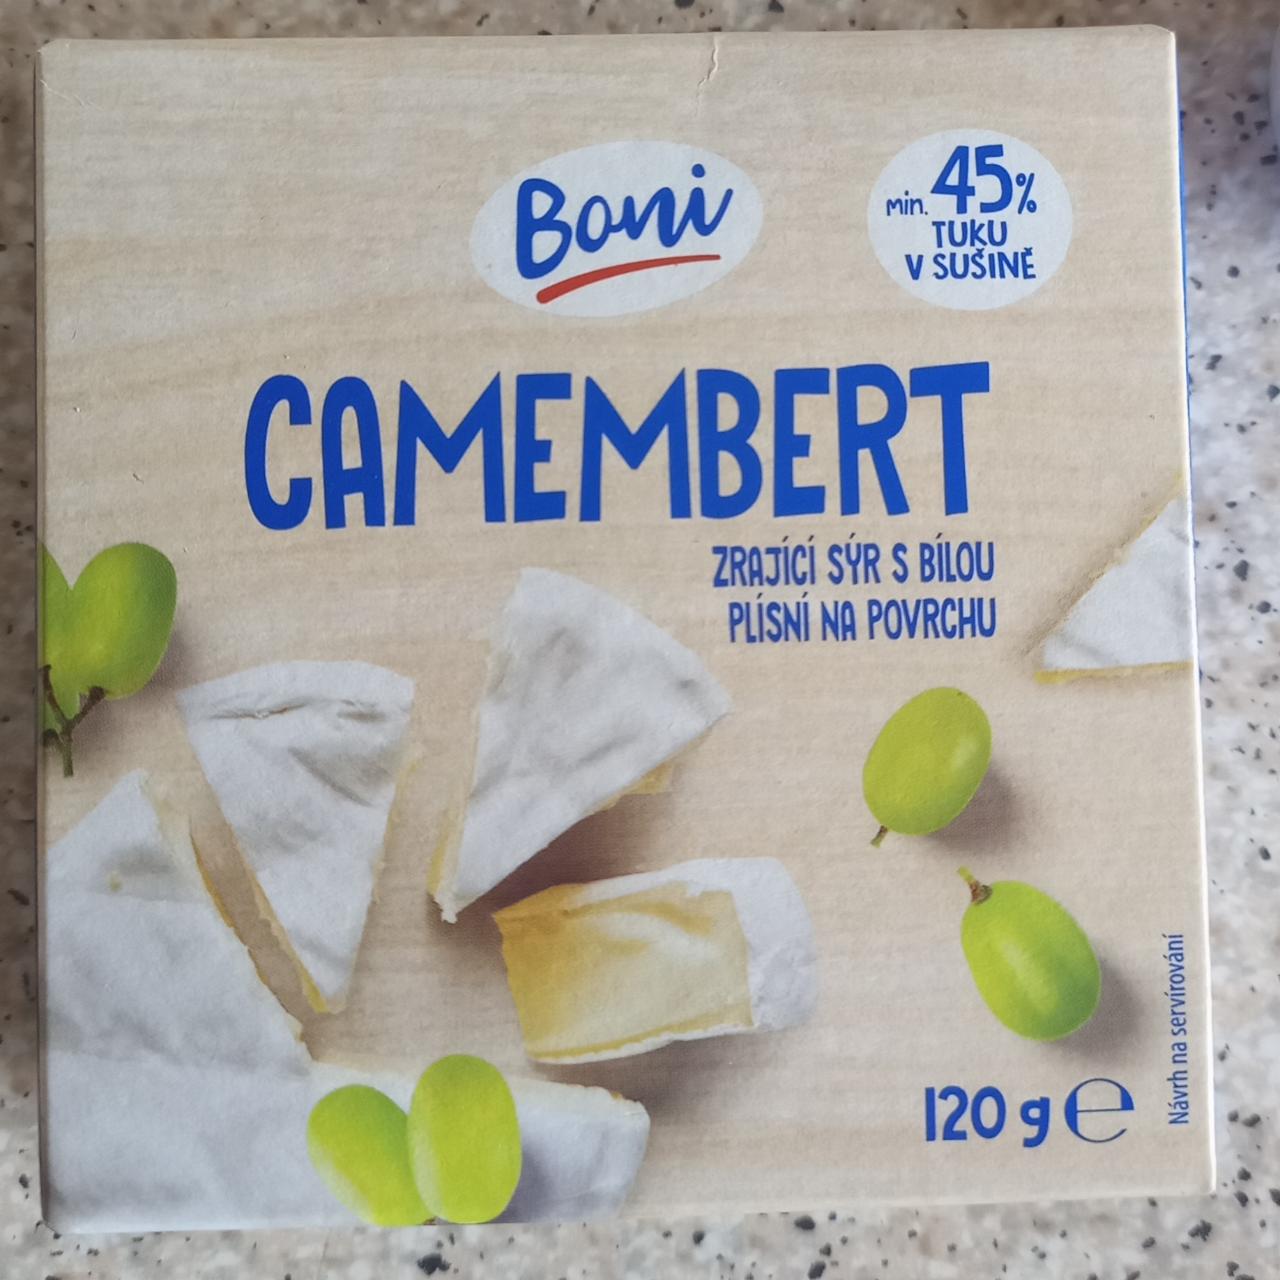 Fotografie - Camembert 45% Boni